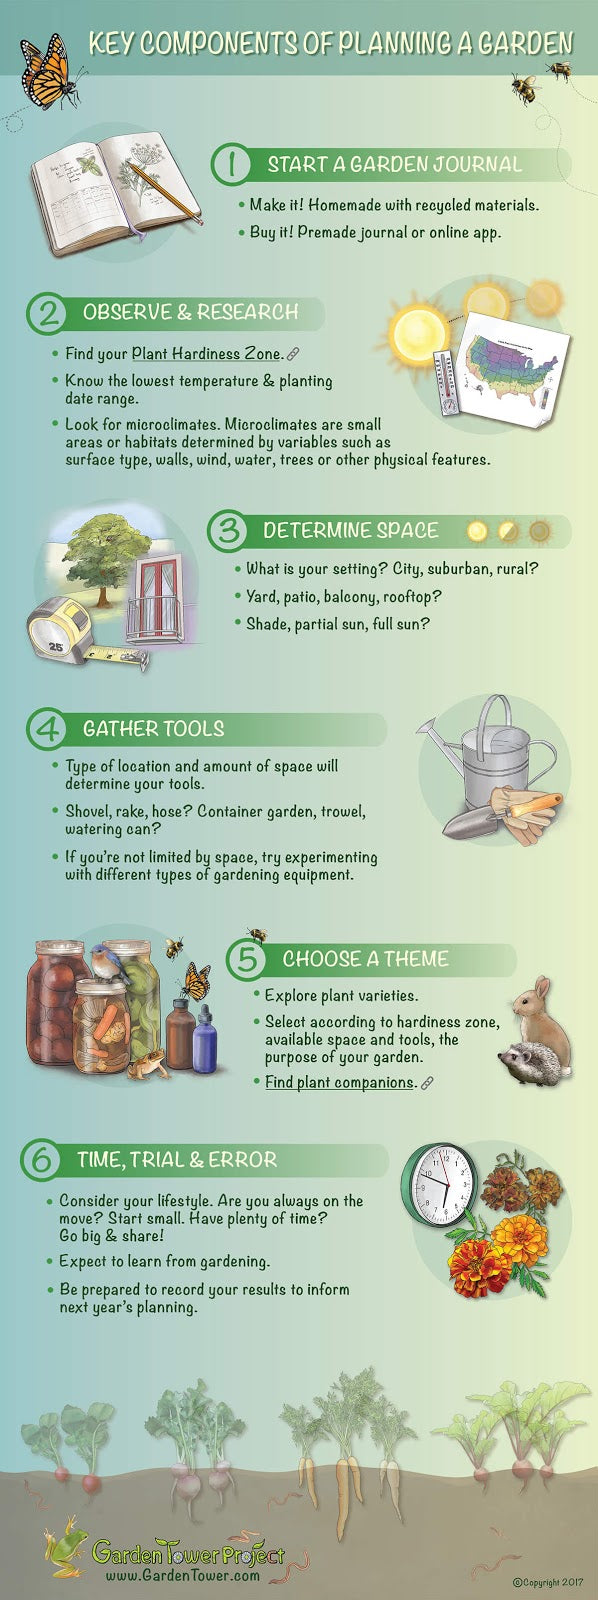 How To Plan A Garden Part 1: Create the Design – Garden Tower